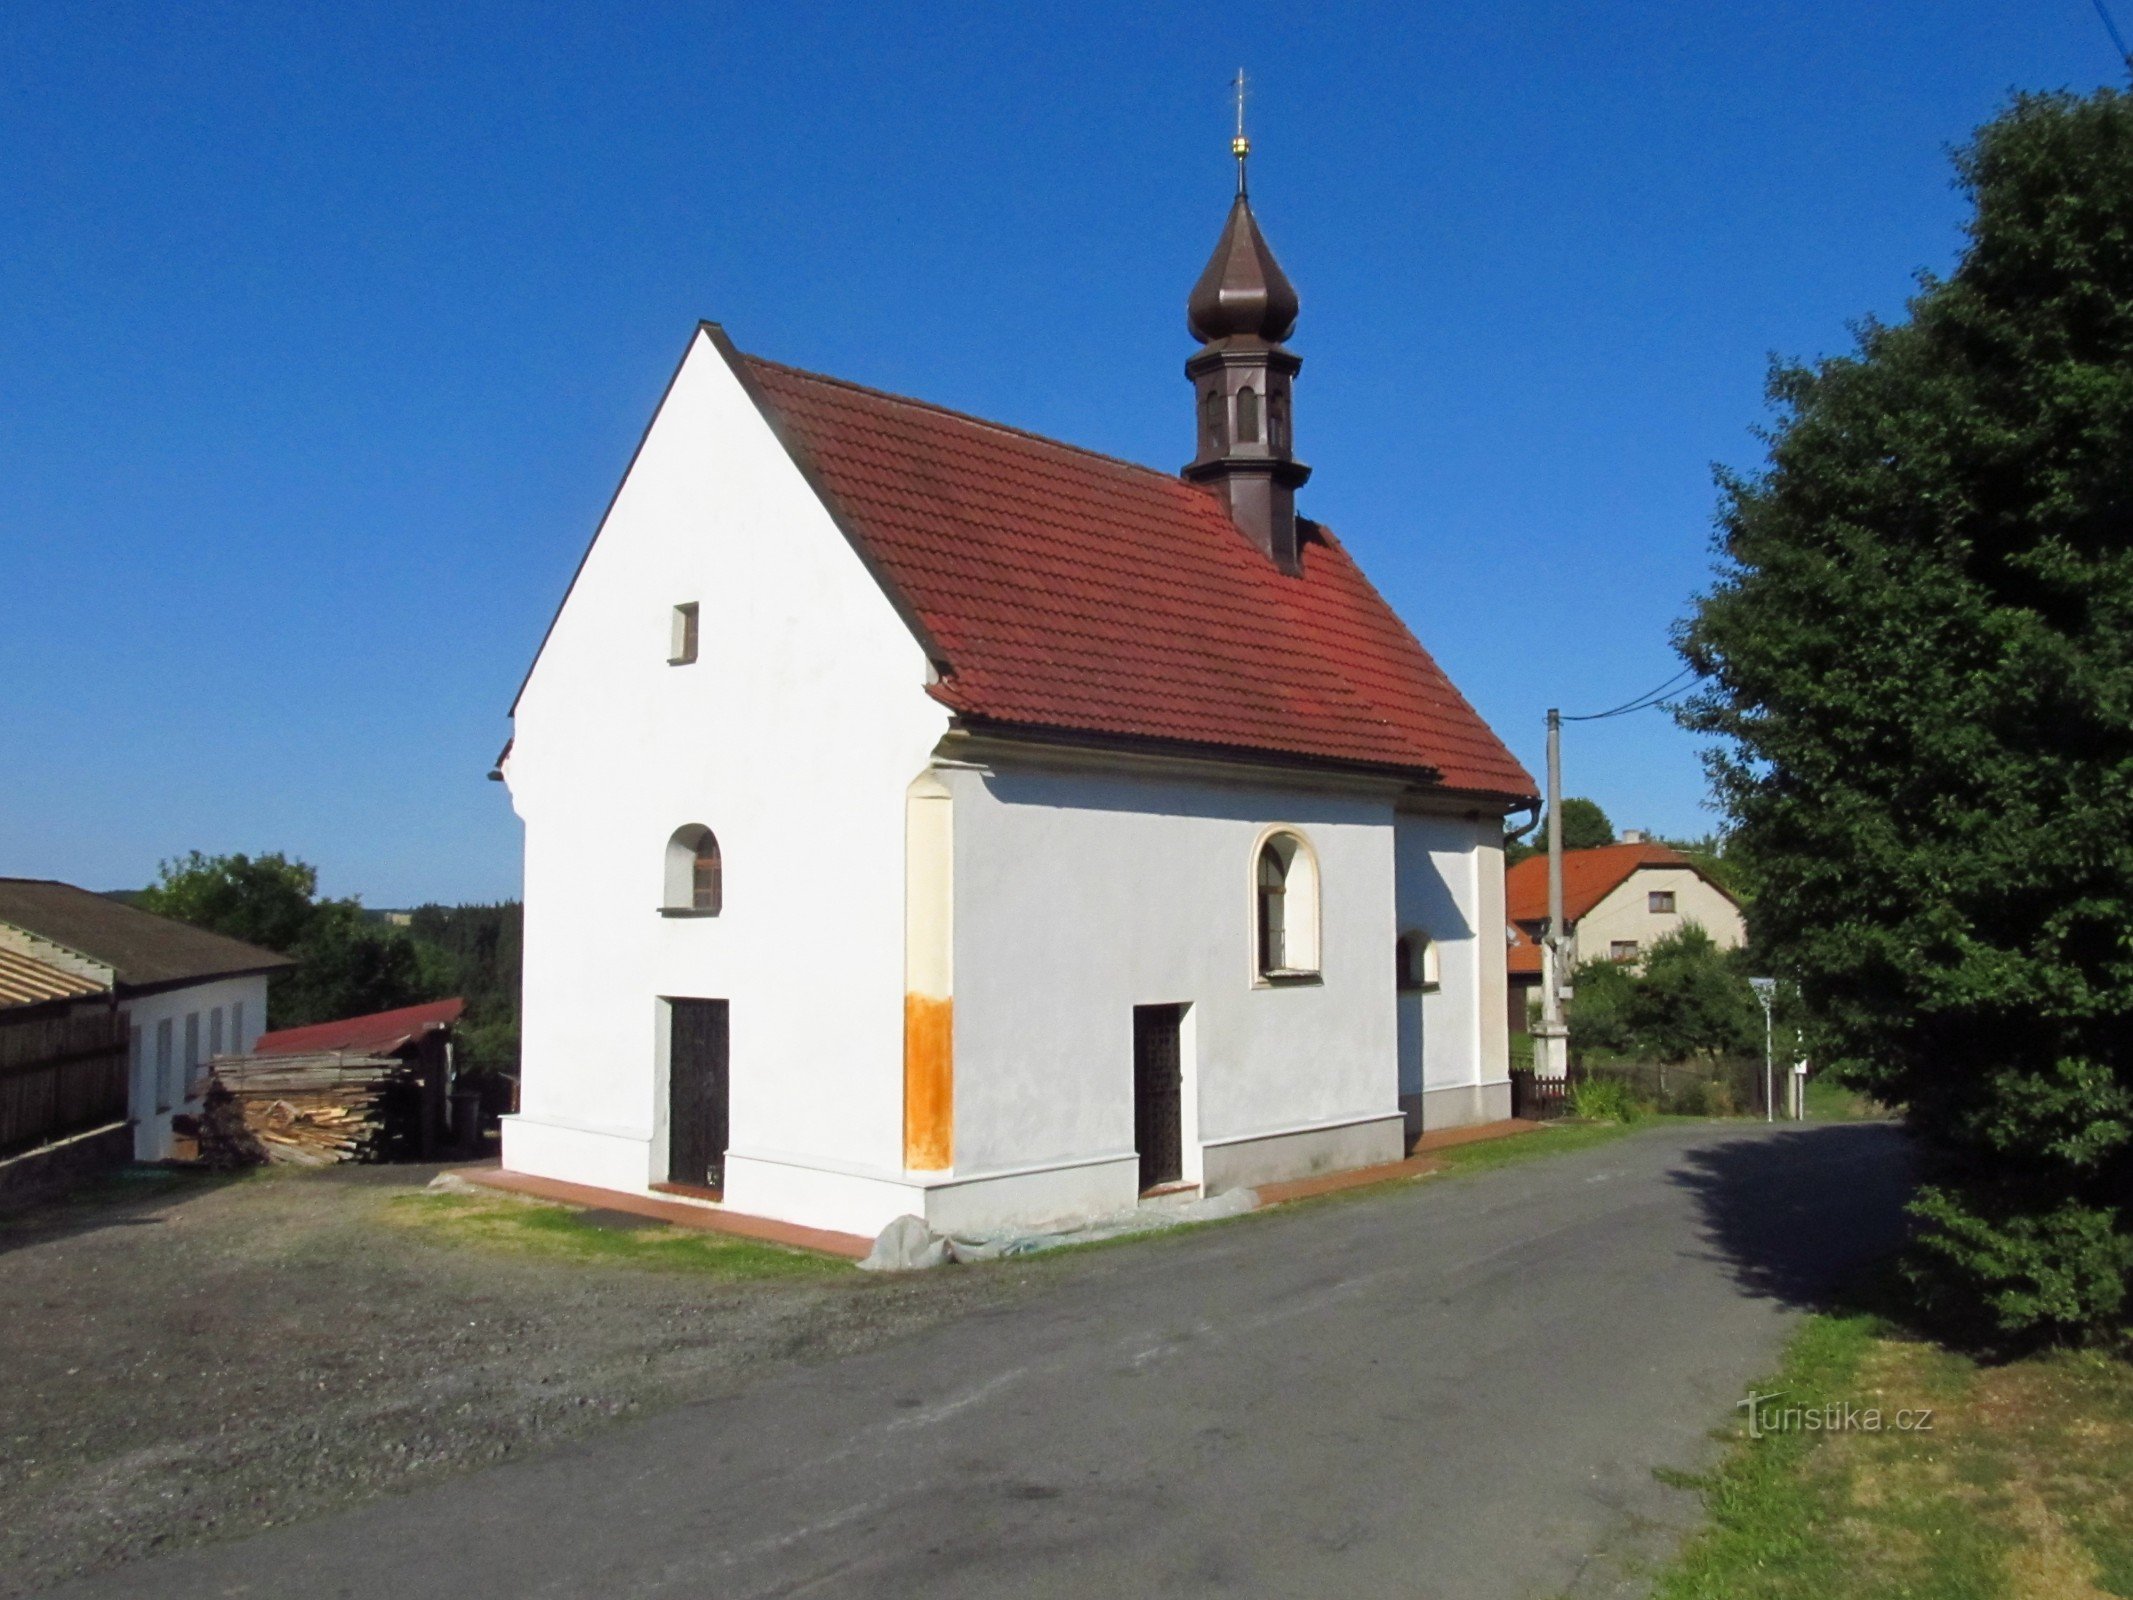 02 Iglesia en Pivonice